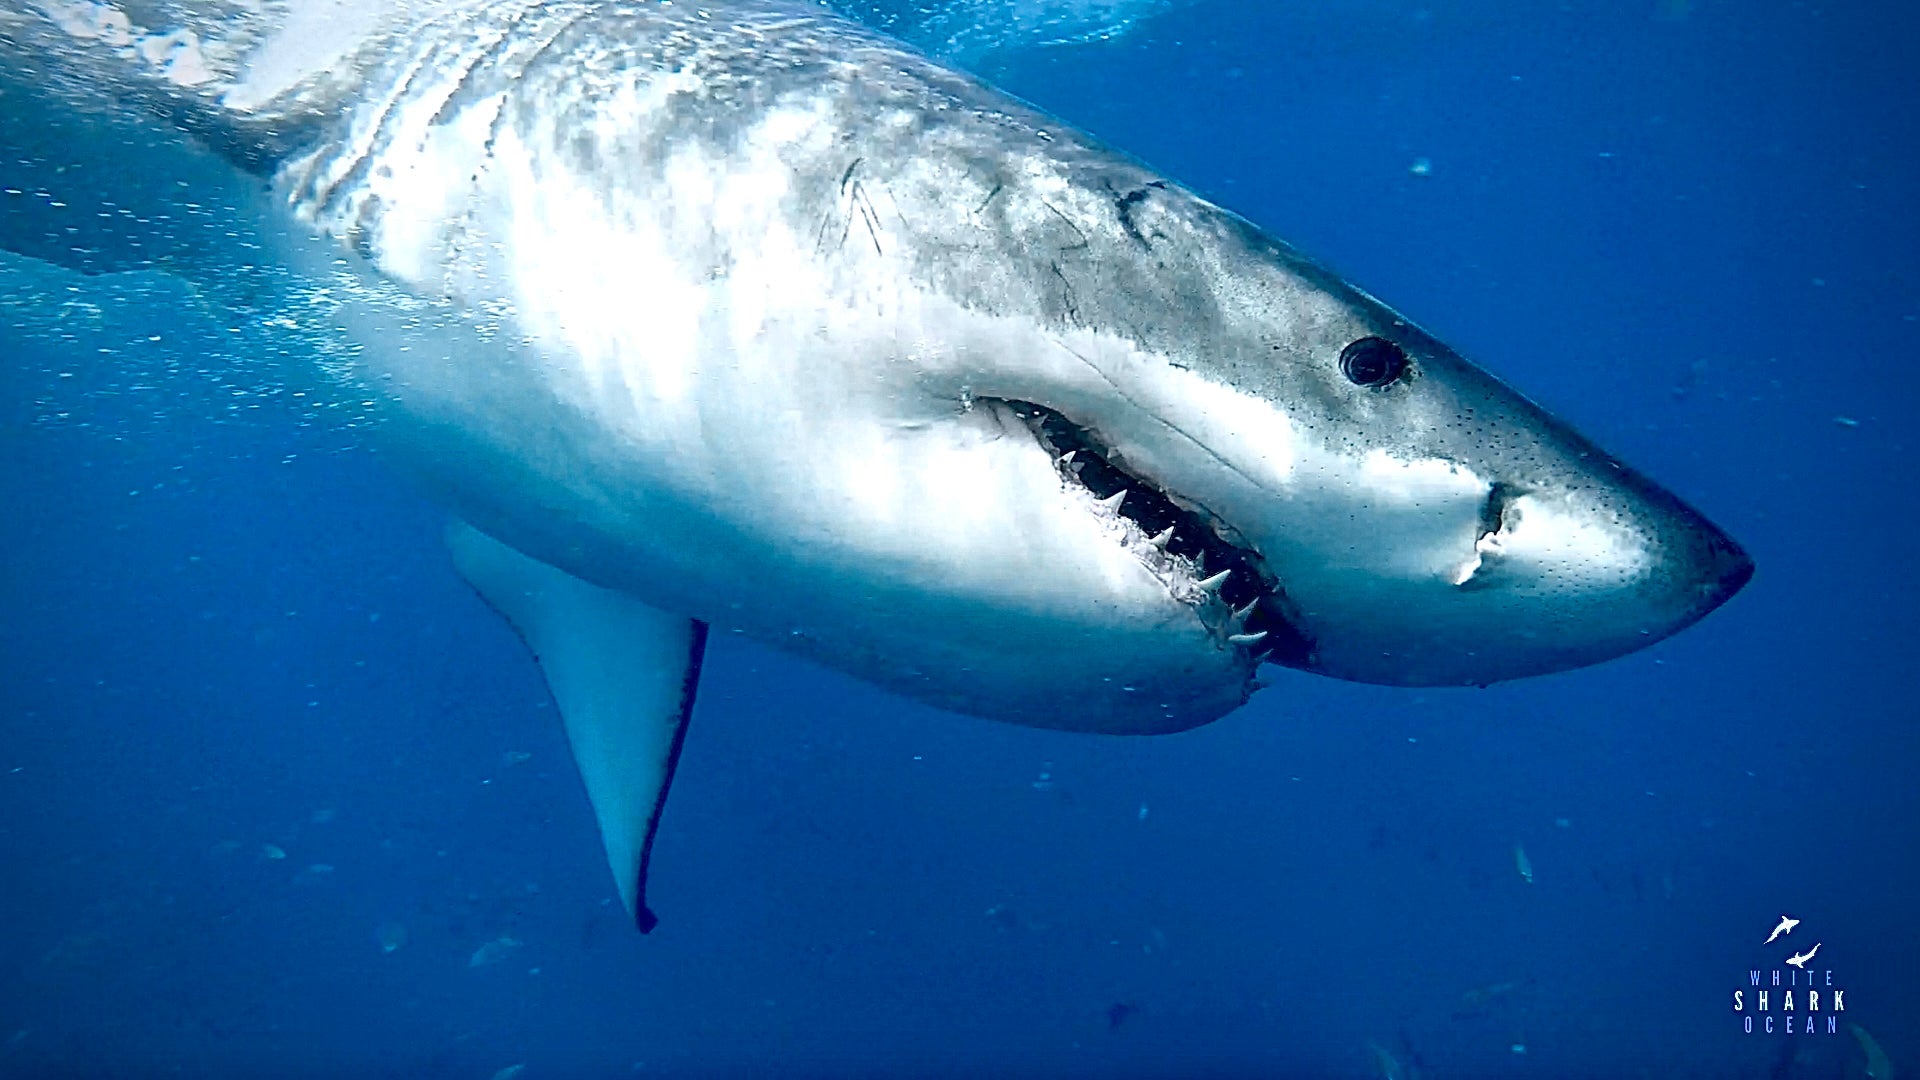 Great White Shark "White Shark Ocean"